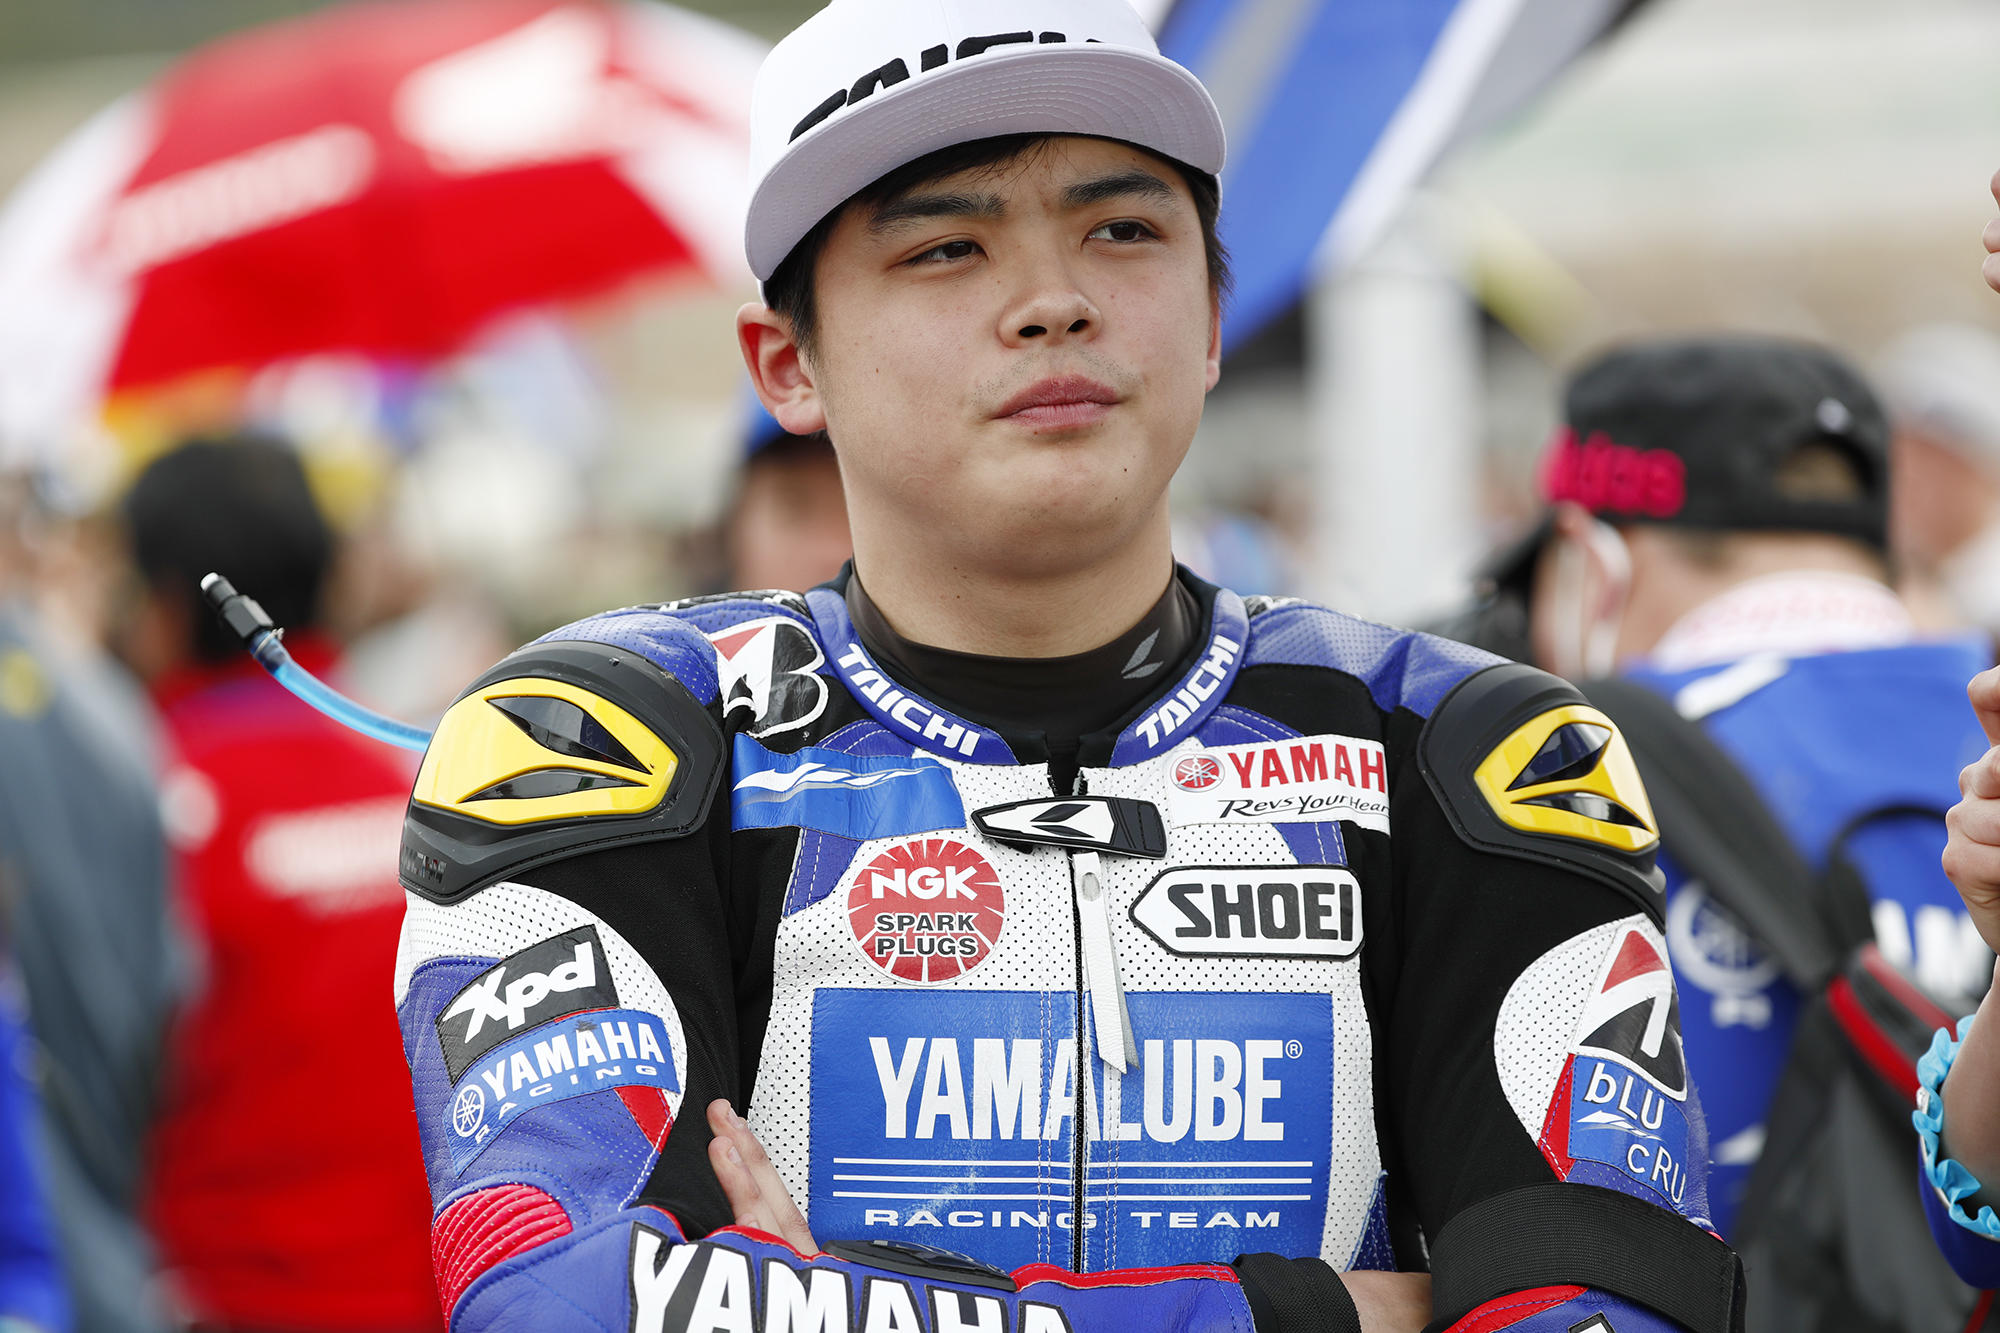 「YZF-R6」にて2017年全日本ロードレース選手権ST600でチャンピオンを獲得し、今シーズンは、「YAMALUBE RACING TEAM」から「YZF-R1」で全日本ロードレース選手権JSBクラスに参戦中の前田恵助選手、2015年全日本ロードレース選手権ST600のチャンピオン・横江竜司選手、そして「YZF-R6」でサーキット走行をされているYoutuber・みやゆうさんと一緒にバスに乗り、SUGOの本コースを巡ります。